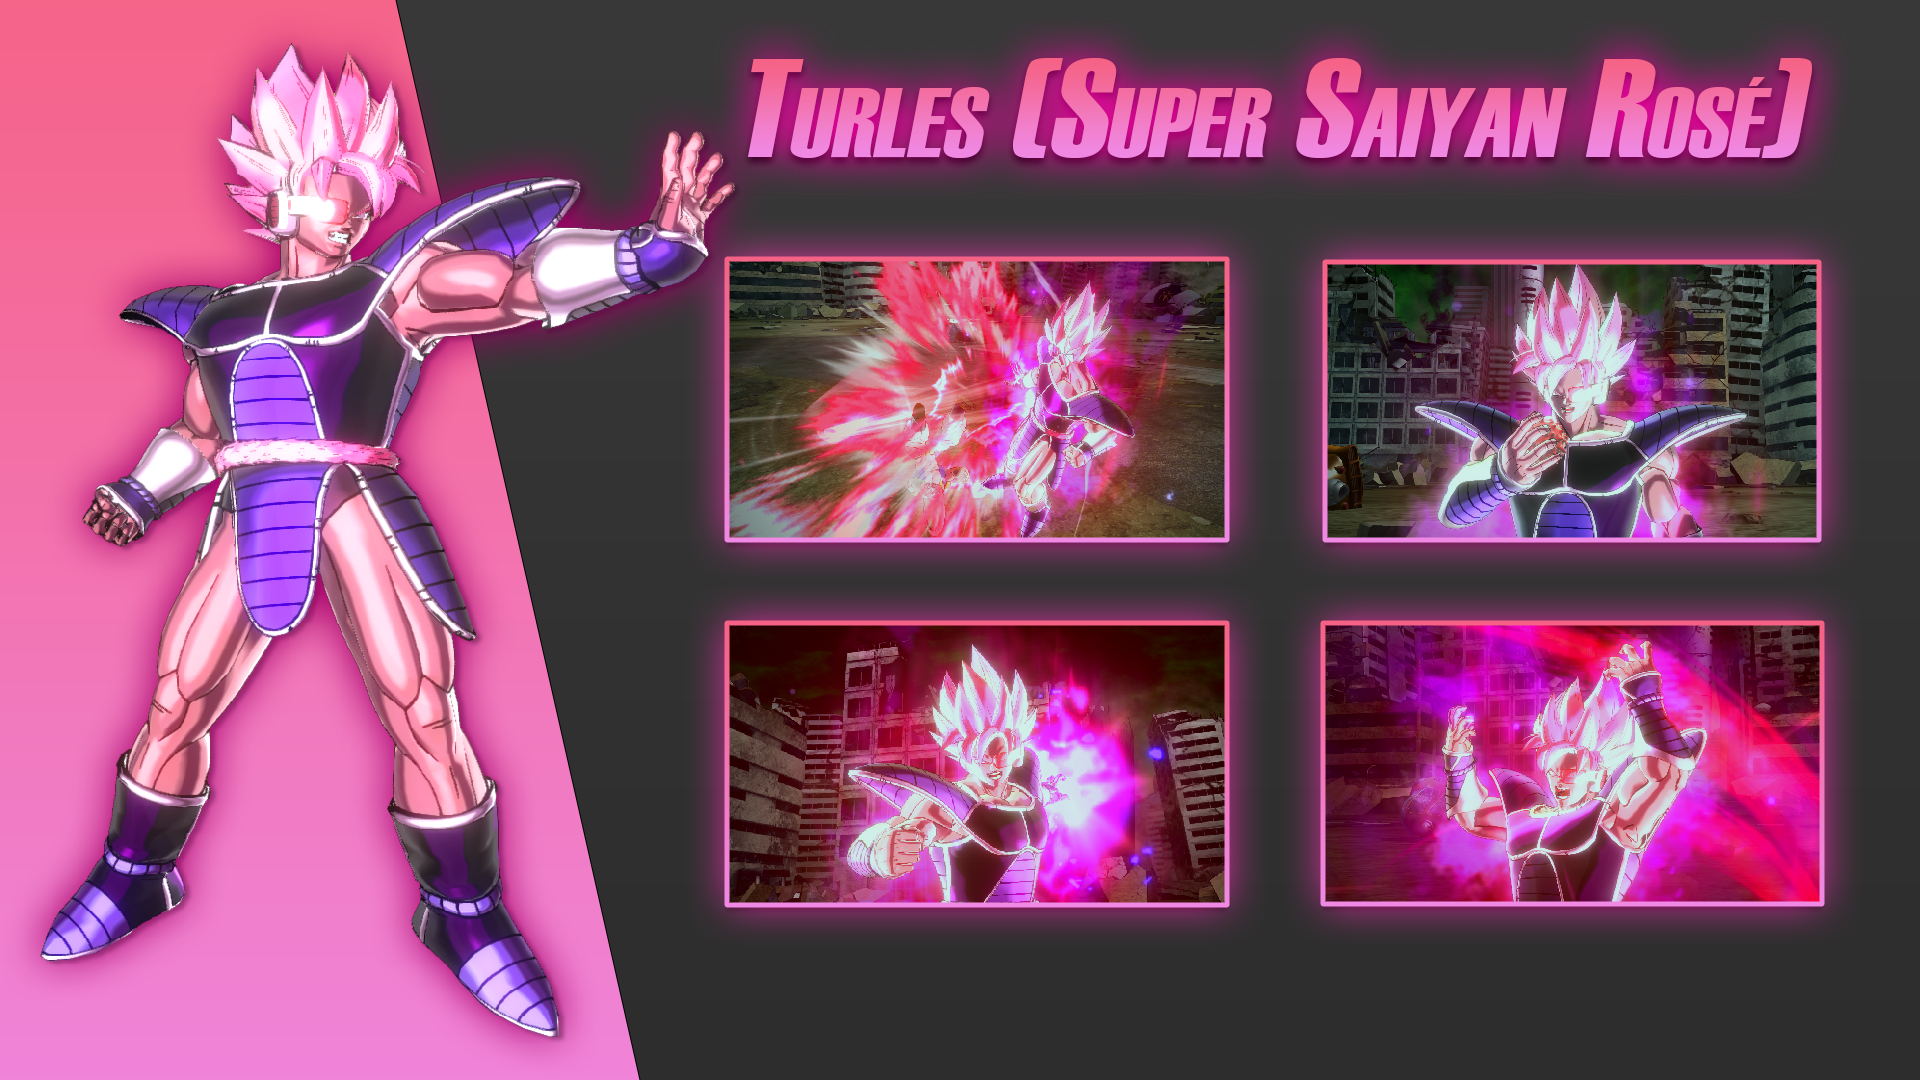 Turles (Super Saiyan Rose)